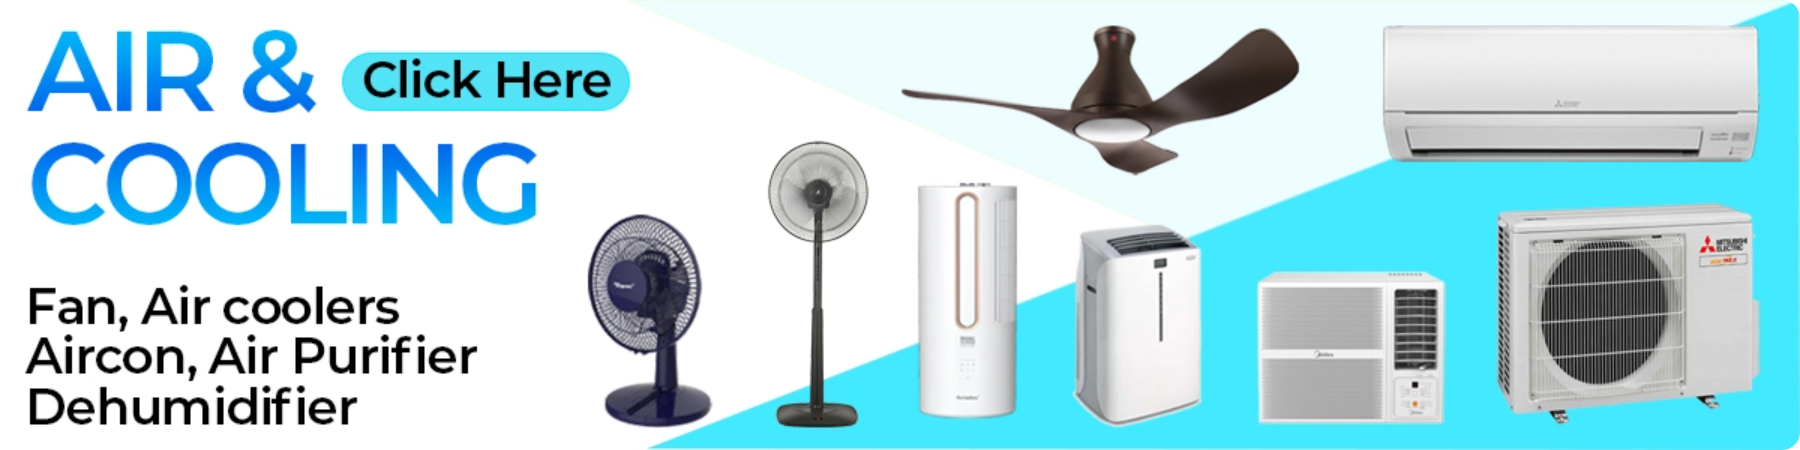 fan, air cooler, aircon, air purifier, dehumidifier